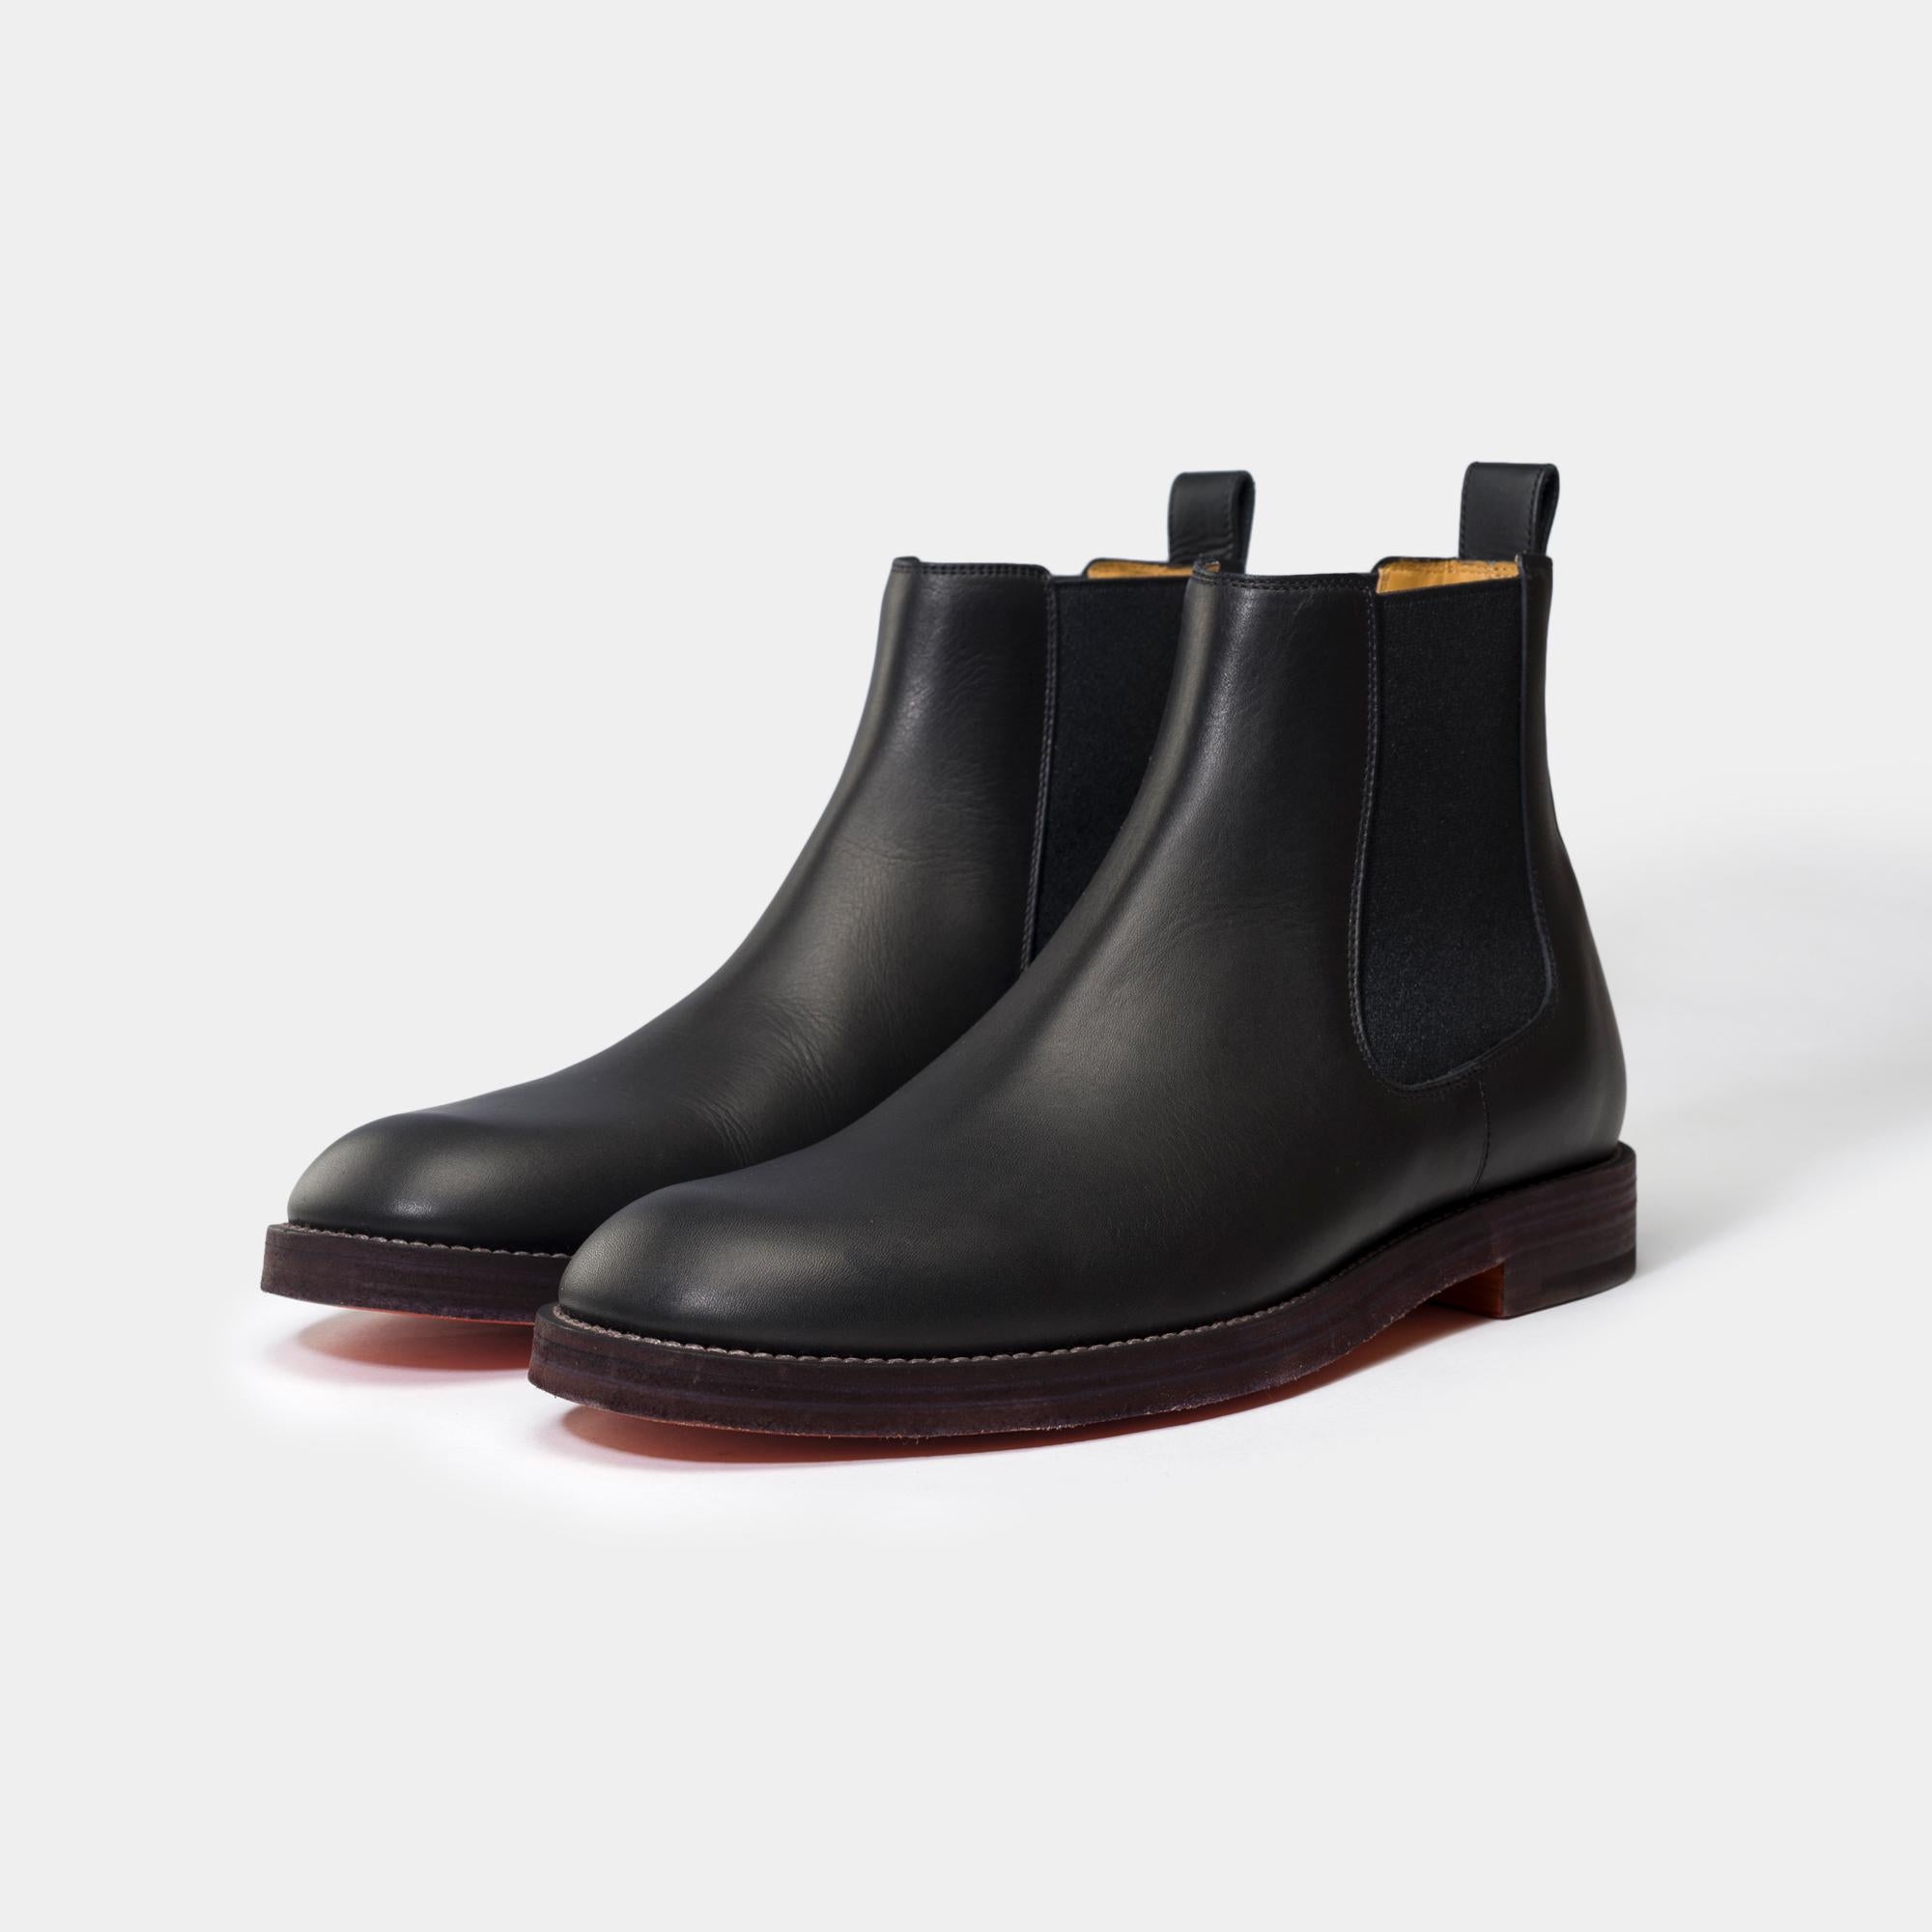 Schöne Hermès Stiefel für Männer aus schwarzem Kalbsleder, Ledersohle
Unterschrift: 